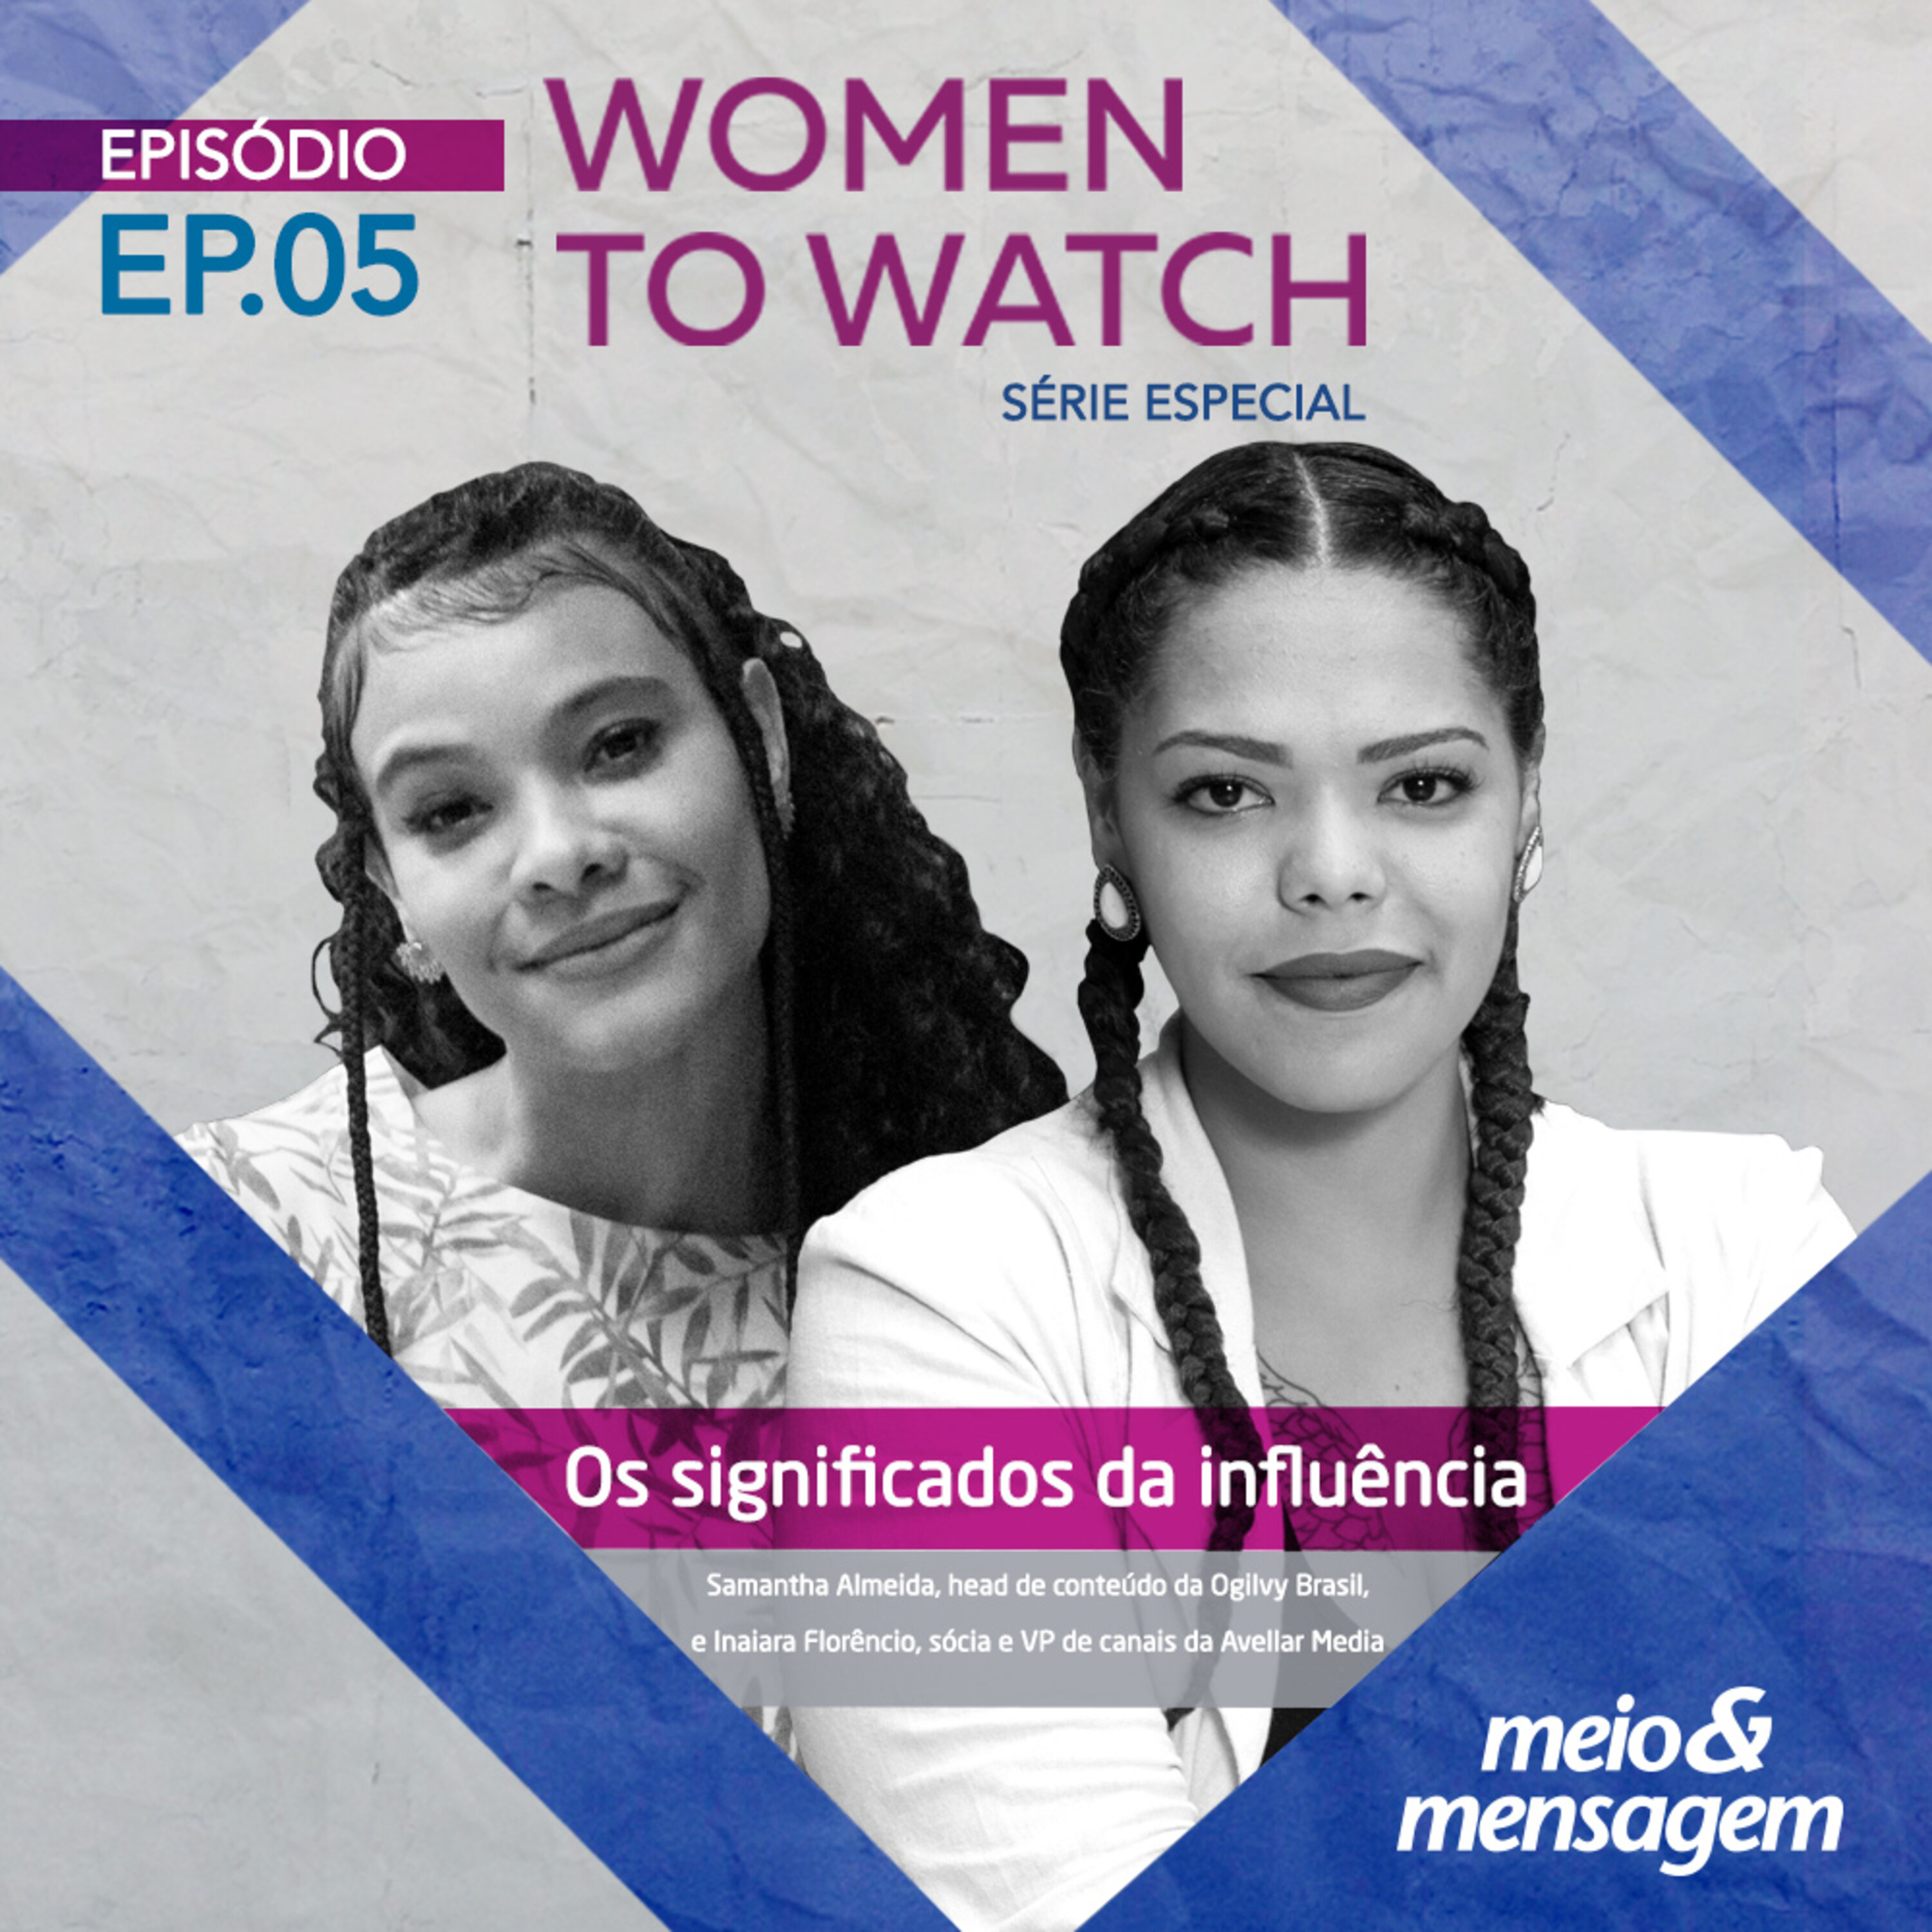 Women to Watch #05 | Os significados da influência, com Samantha Almeida, head de conteúdo da Ogilvy Brasil e Inaiara Florêncio, sócia e VP de canais da Avellar Media